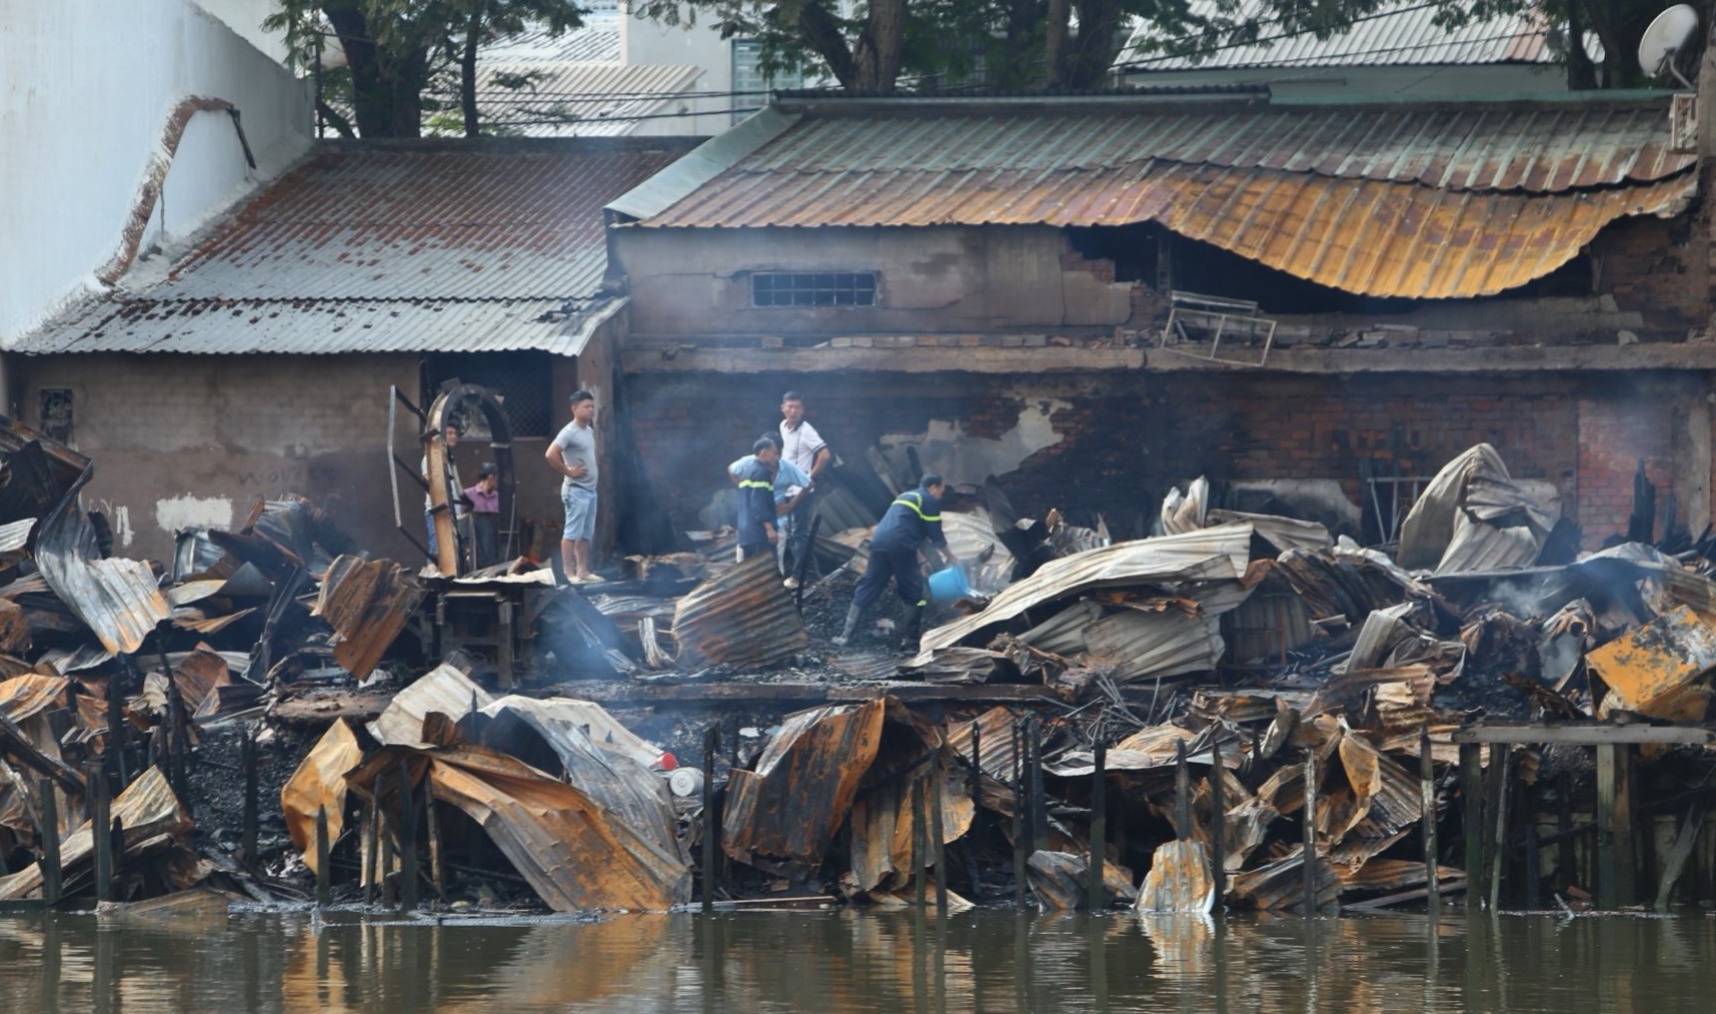 Thêm nguồn hỗ trợ 9 hộ dân bị ảnh hưởng bởi vụ cháy dãy nhà ven kênh Đôi- Ảnh 3.